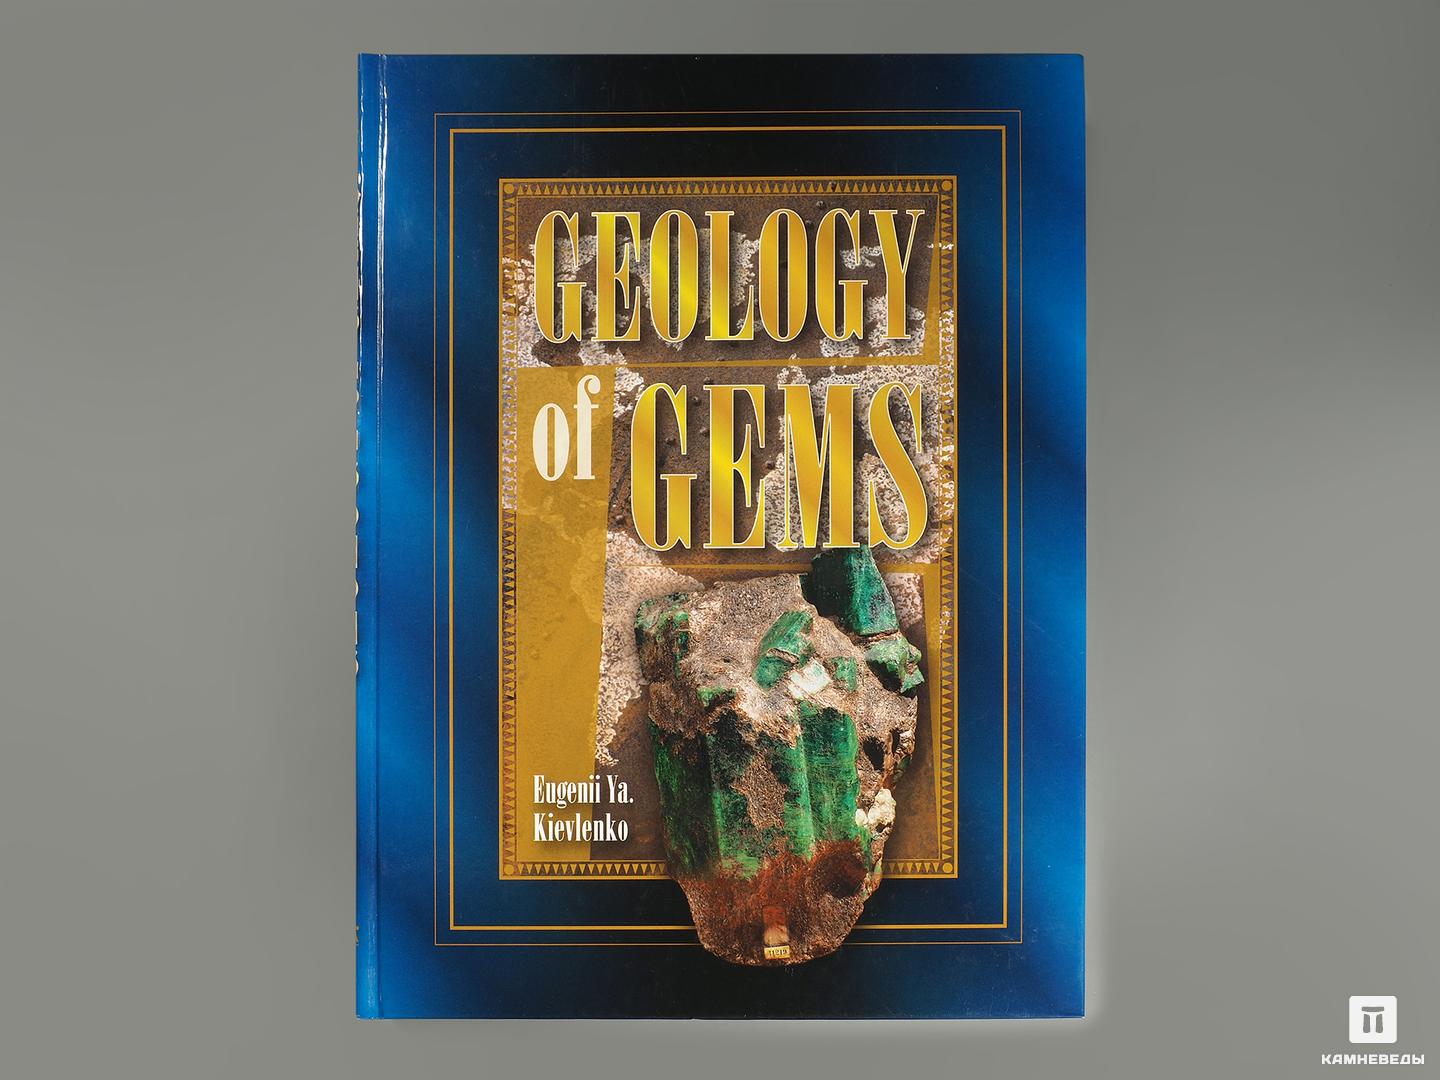 Книга: Eugenii Ya. Kievlenko «Geology of gems» south sea tales рассказы южных морей книга для чтения на английском языке мягк classical literature лондон дж каро